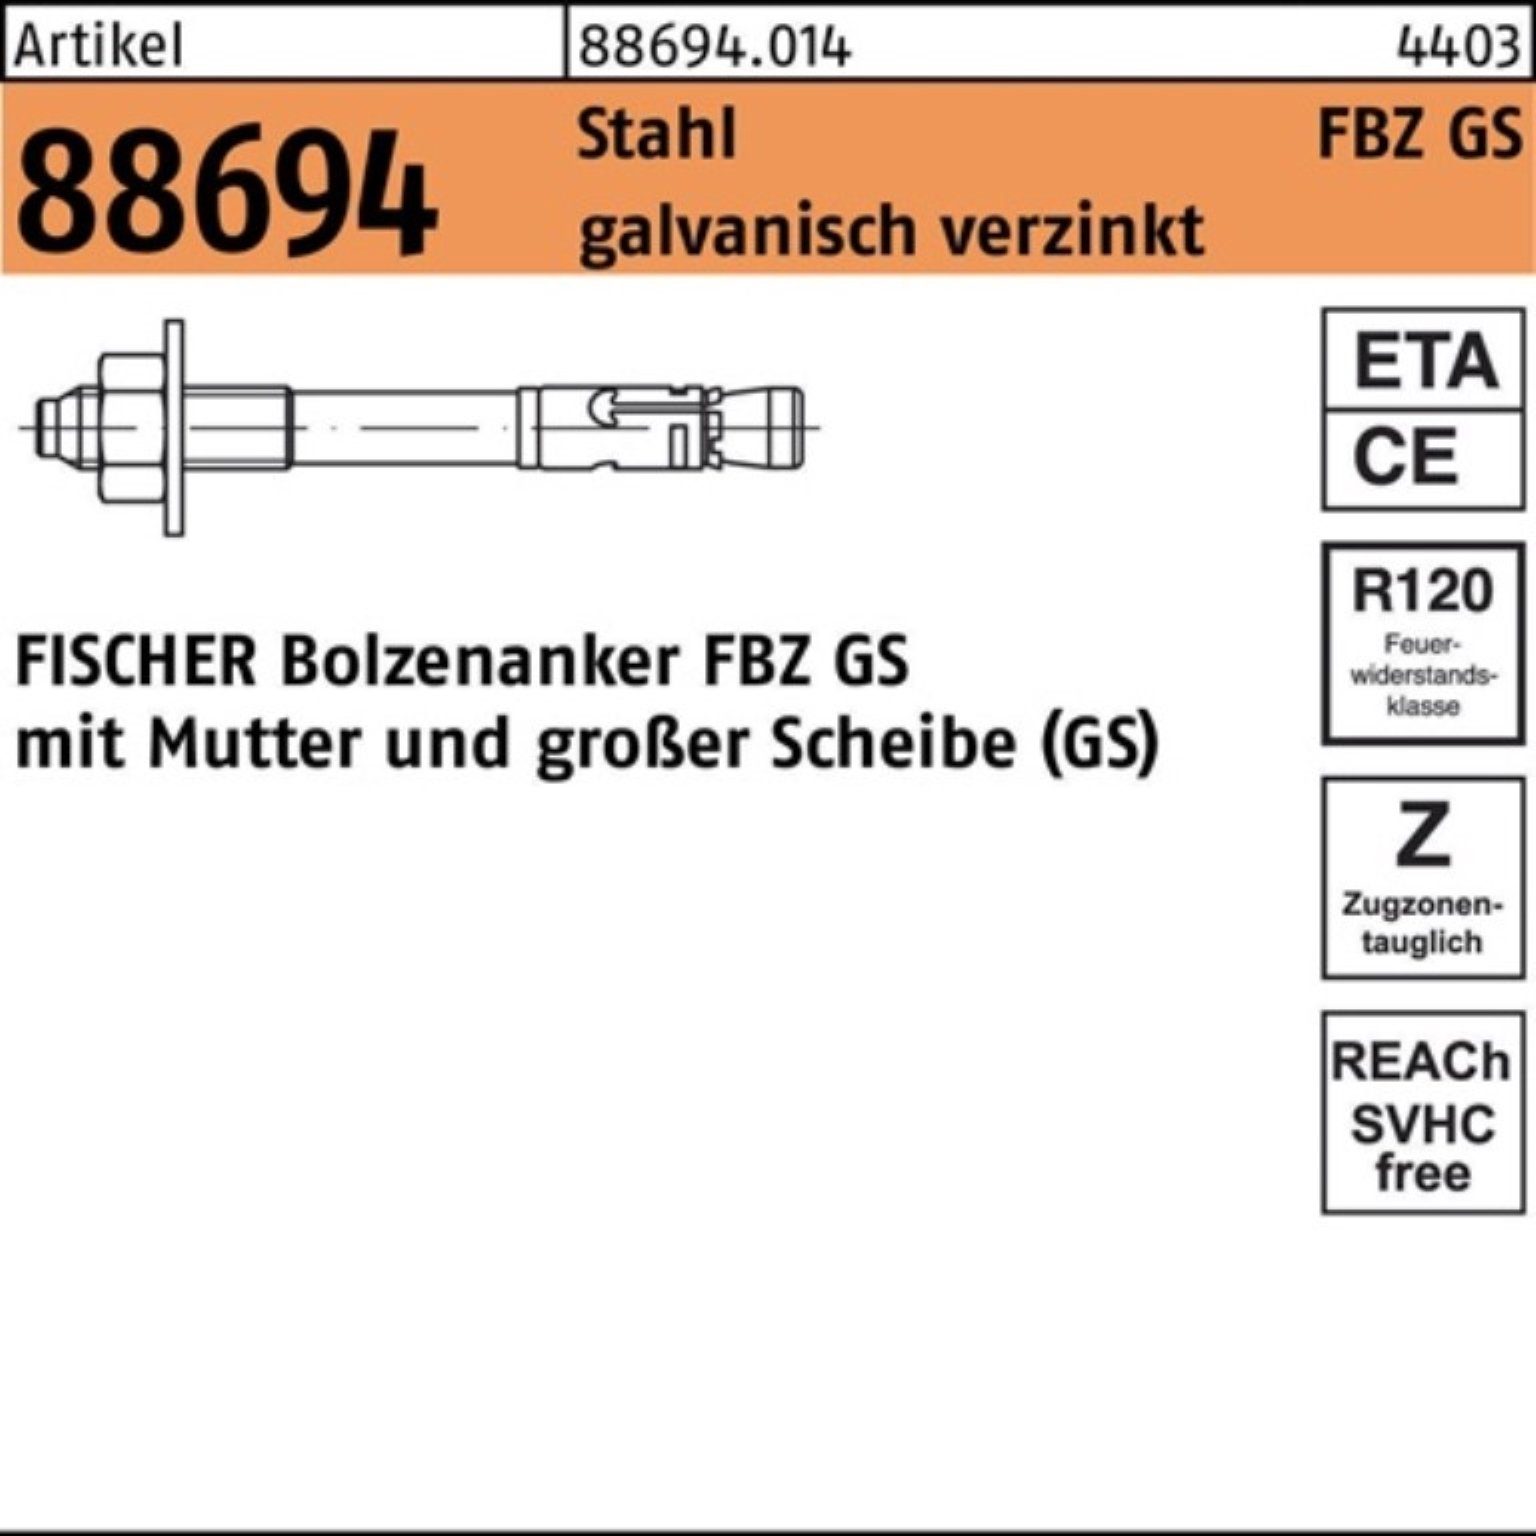 fischer Bolzenanker 88694 10/10 Bolzenanker Stahl Stück R 100er Pack GS 50 galv.verz. FBZ